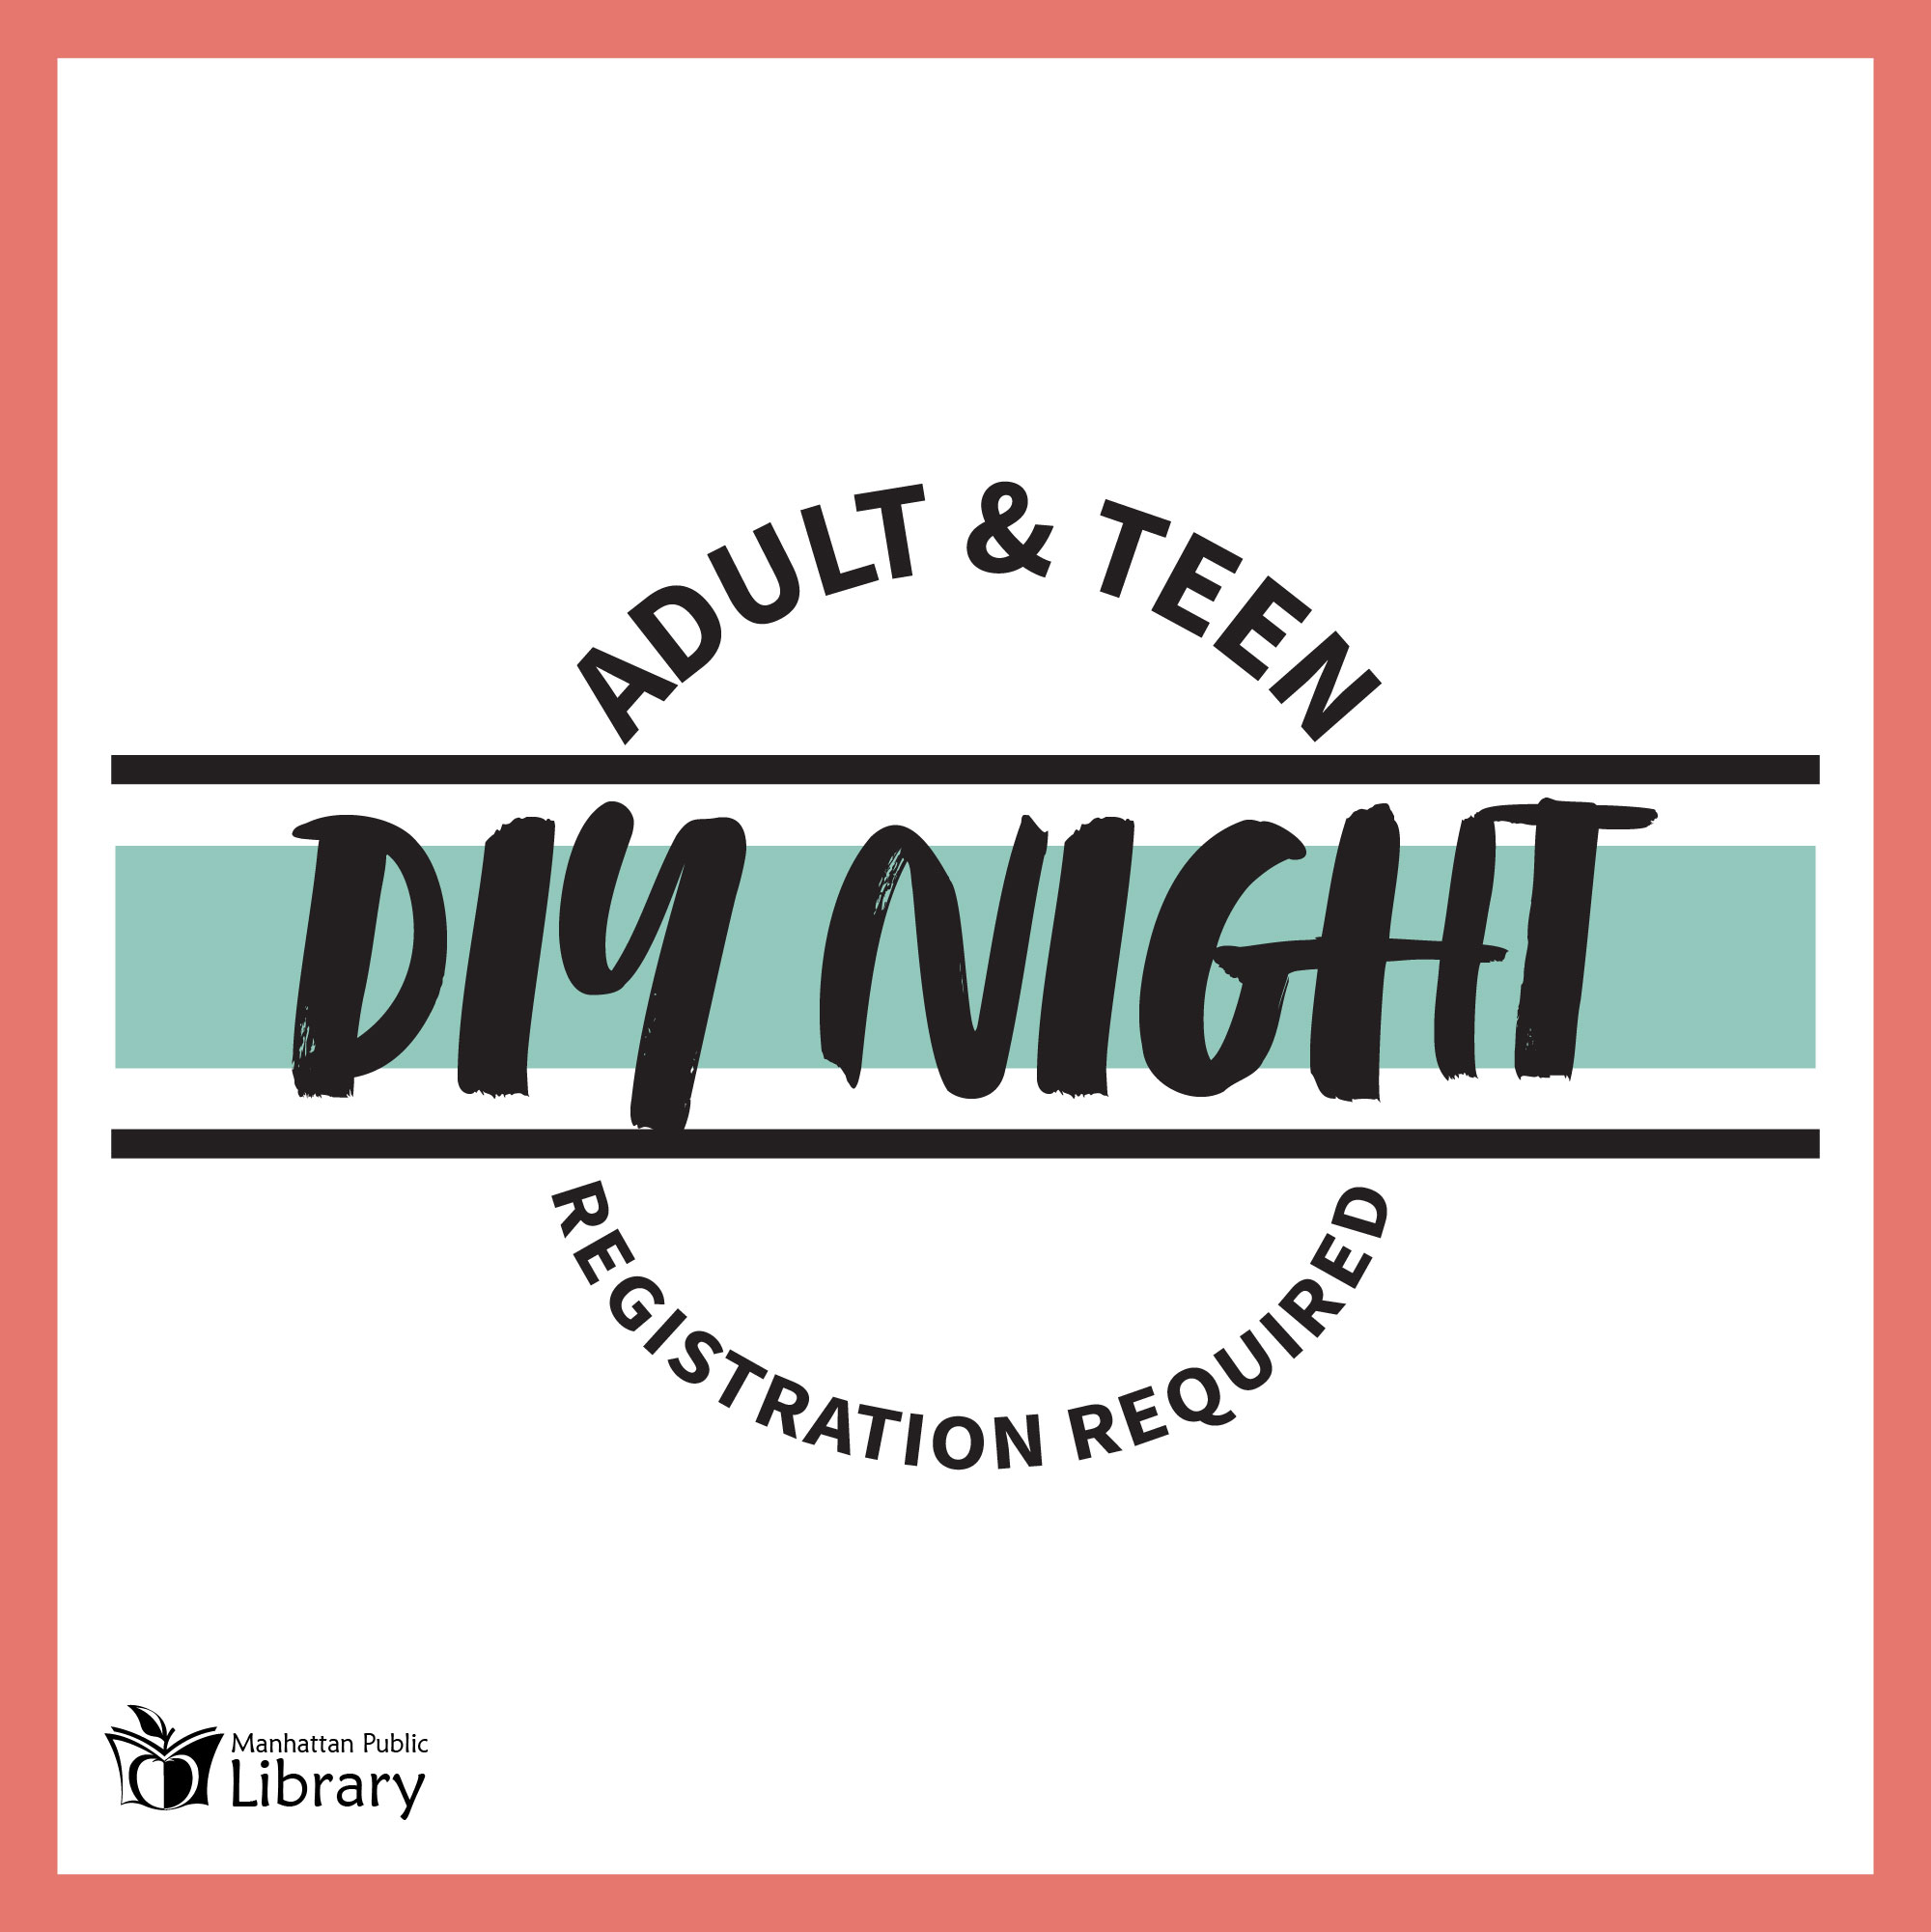 Adult & Teen DIY Night